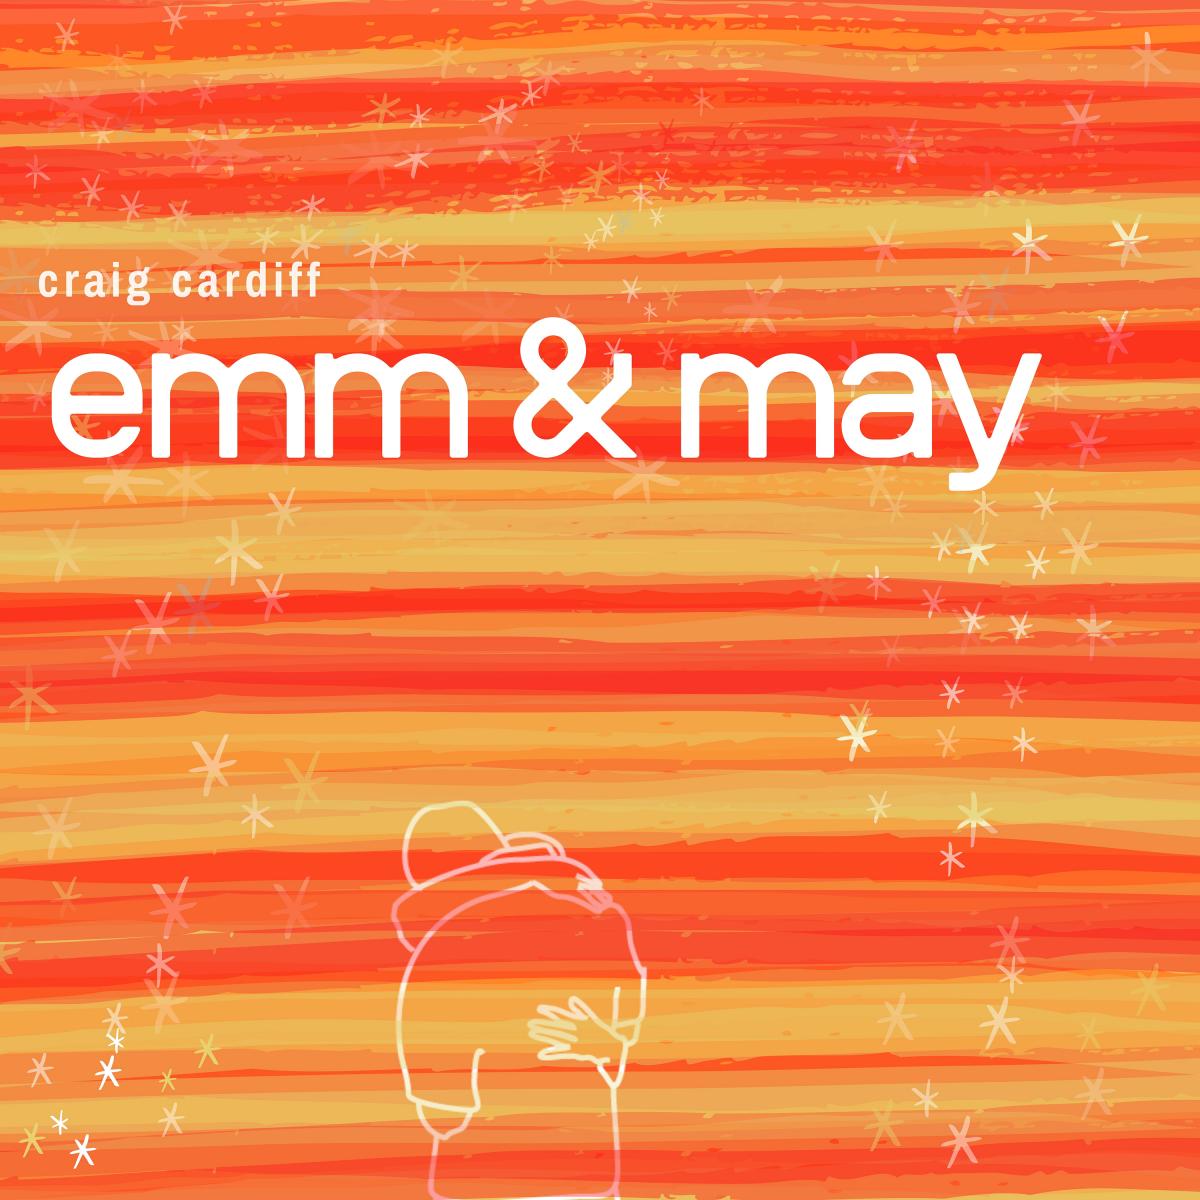 Emm & May Craig Cardiff